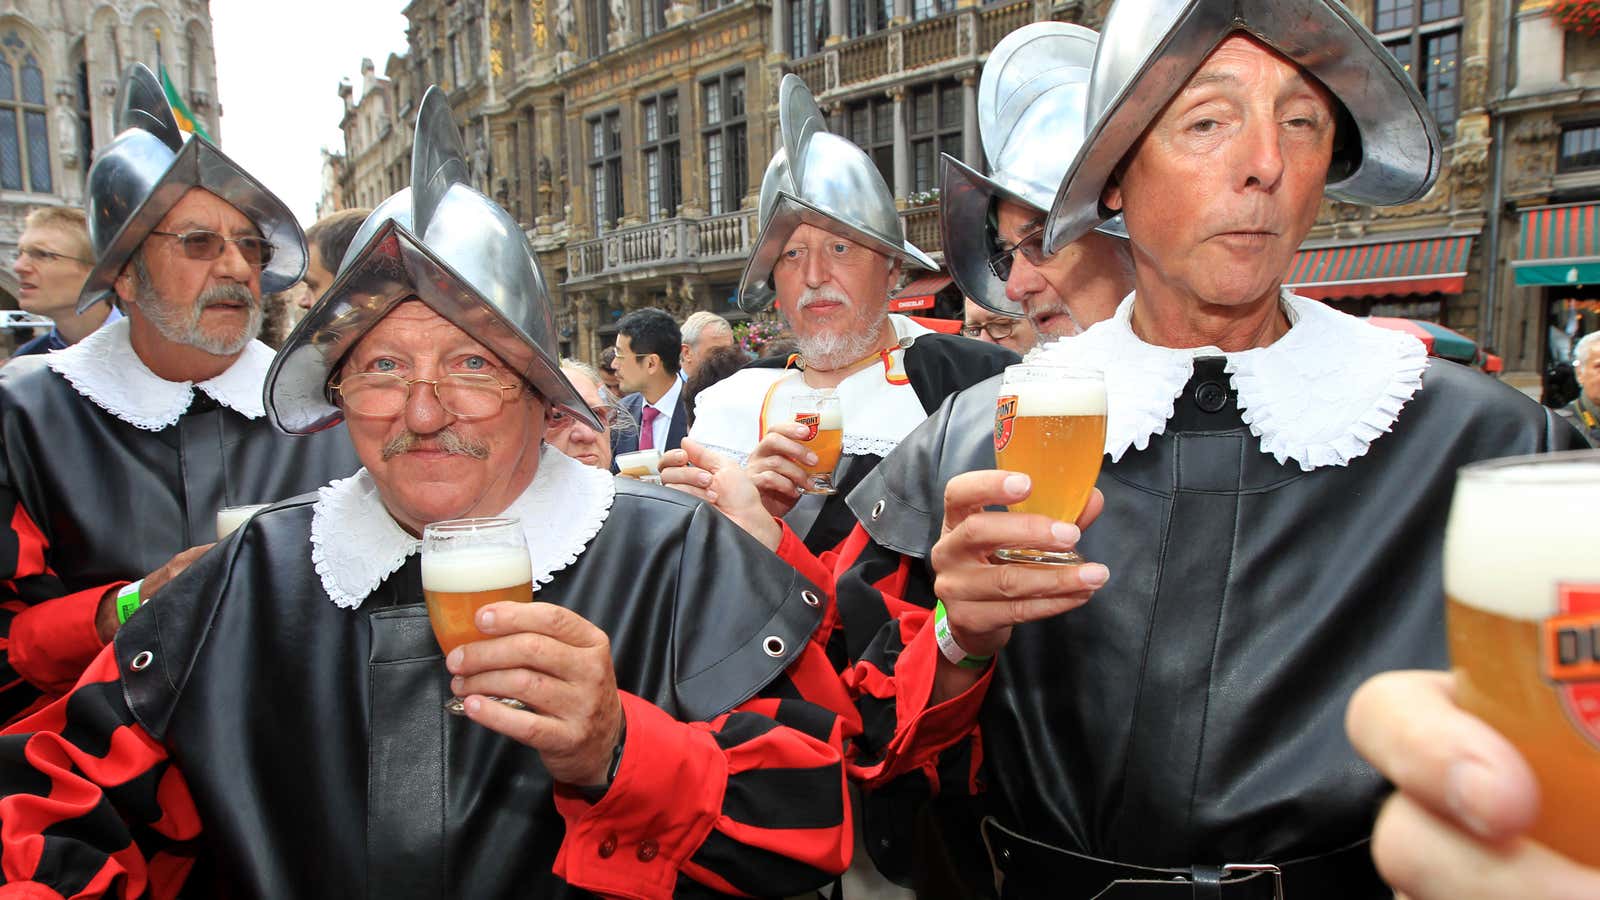 Long live Belgian beer.